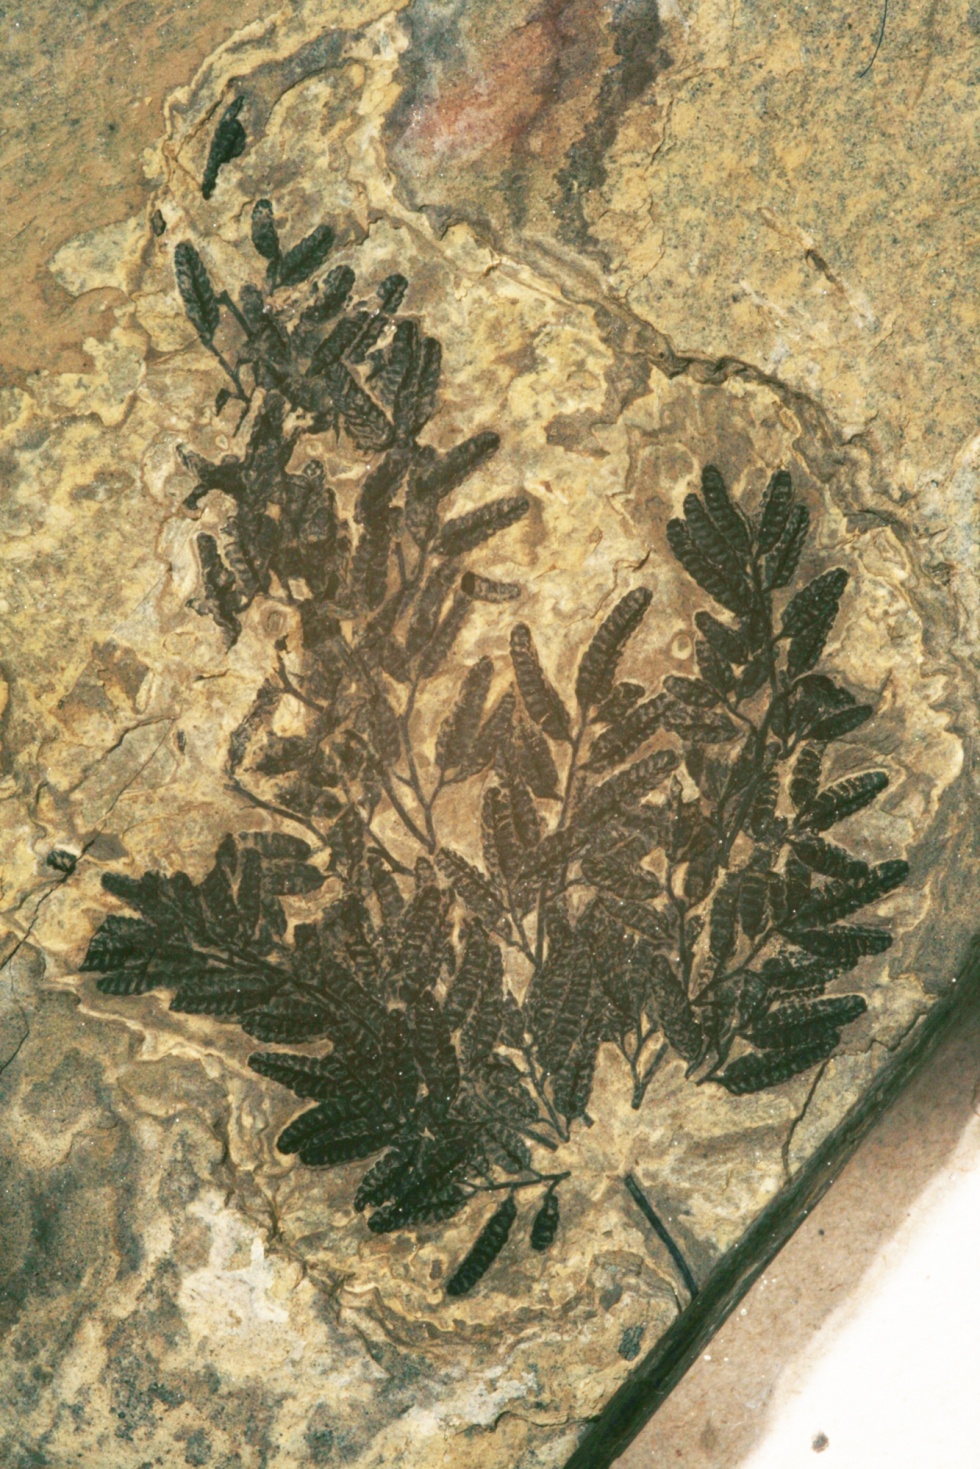 Kletterfarns - Lygodium kaulfussi (Naturhistorisches Museum Mainz / Landessammlung für Naturkunde Rheinland-Pfalz CC BY-NC-SA)